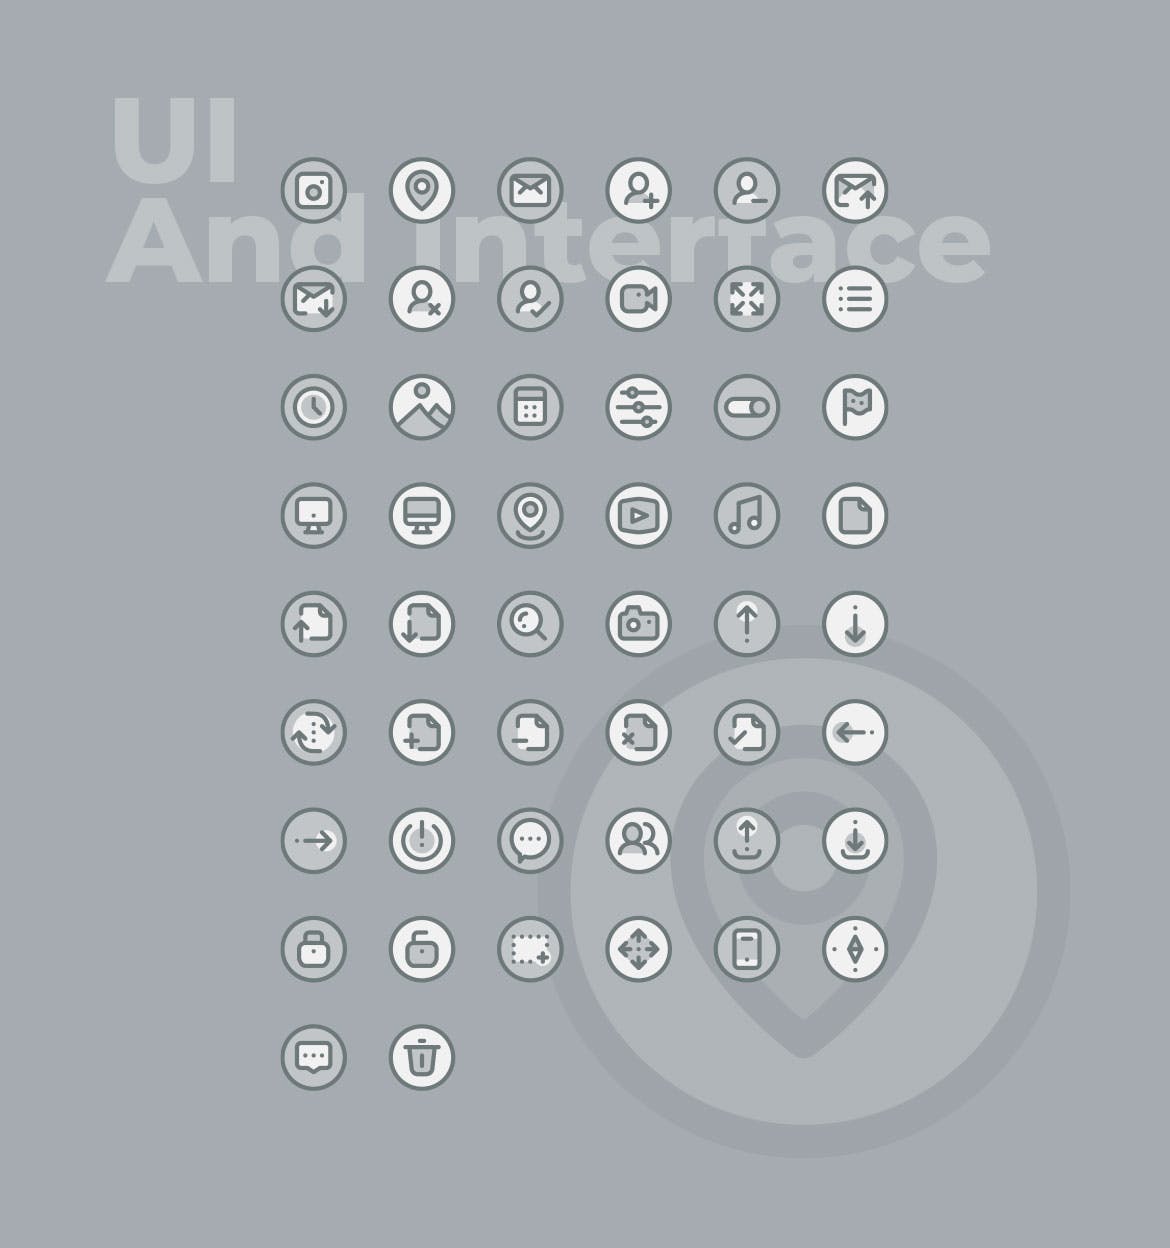 50枚UI用户界面主题双色调矢量第一素材精选图标 50 UI And Interface Icons  –  Two Tone Style插图(1)